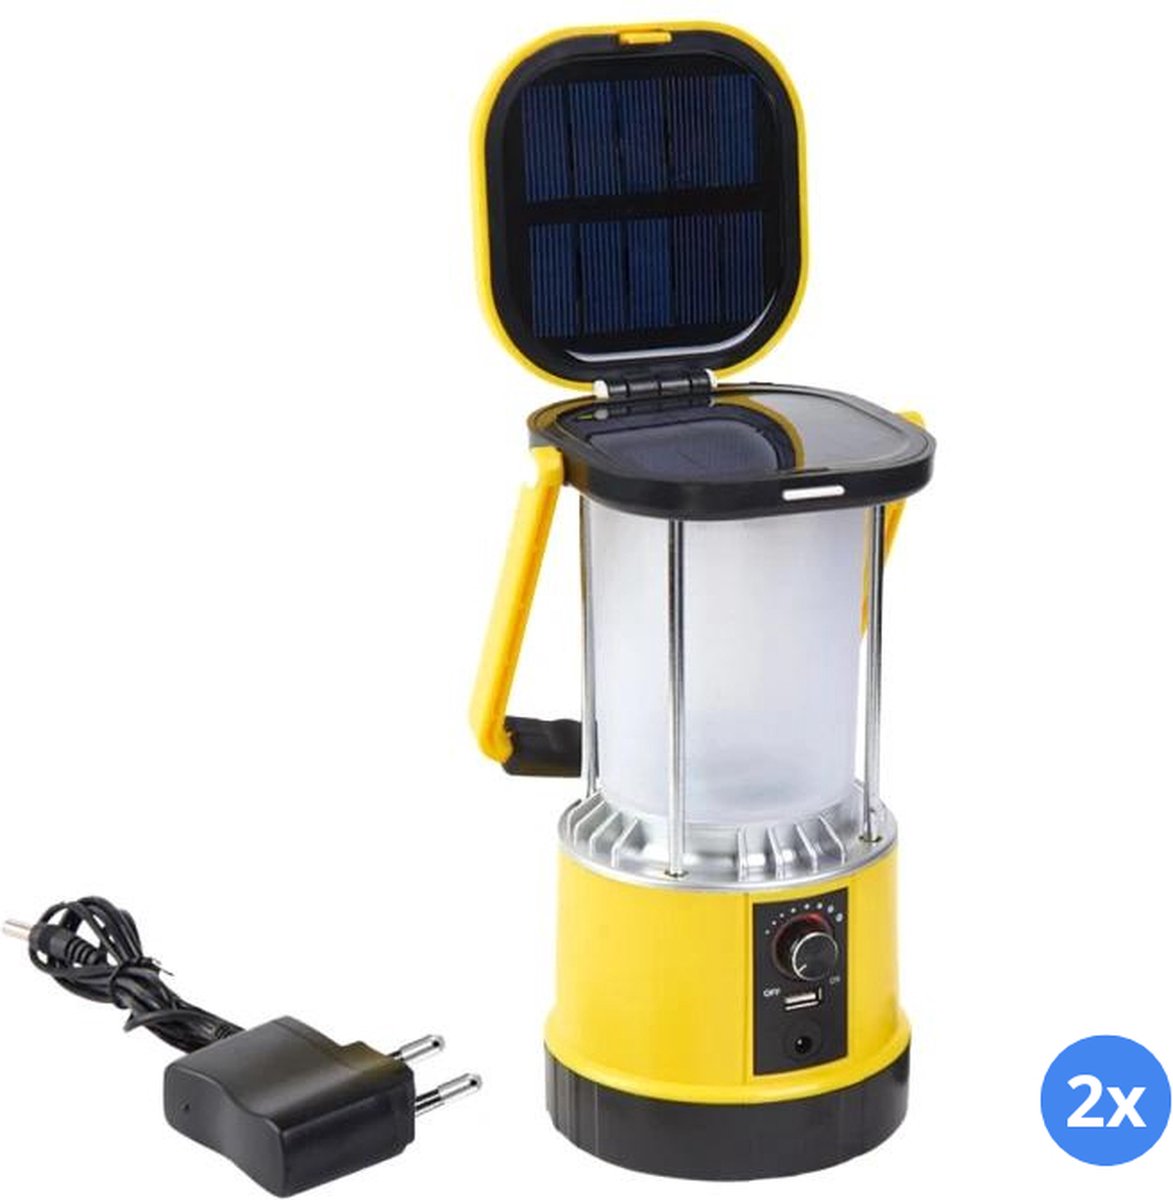 Solar kampeerlamp Clap - Voordeelset van 2 stuks - Dimbaar met USB lader - Tentlamp op zonne-energie - Oplaadbare camping verlichting voor op tafel - Geel